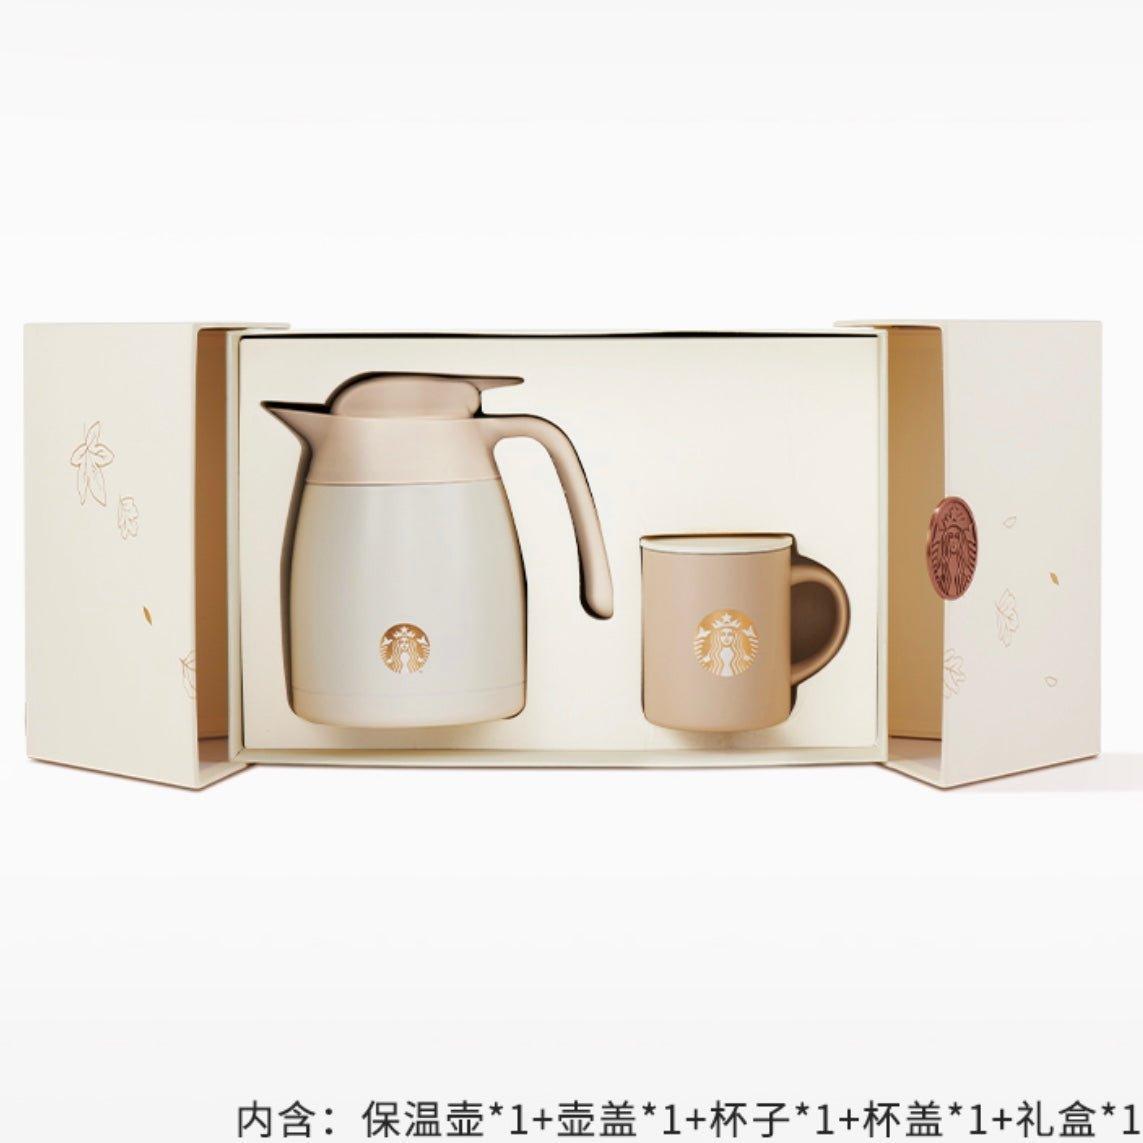 1L/34oz Gentle and Warm Autumn Thermos Gift Box (Inclusive Kettle & Mug) - Ann Ann Starbucks